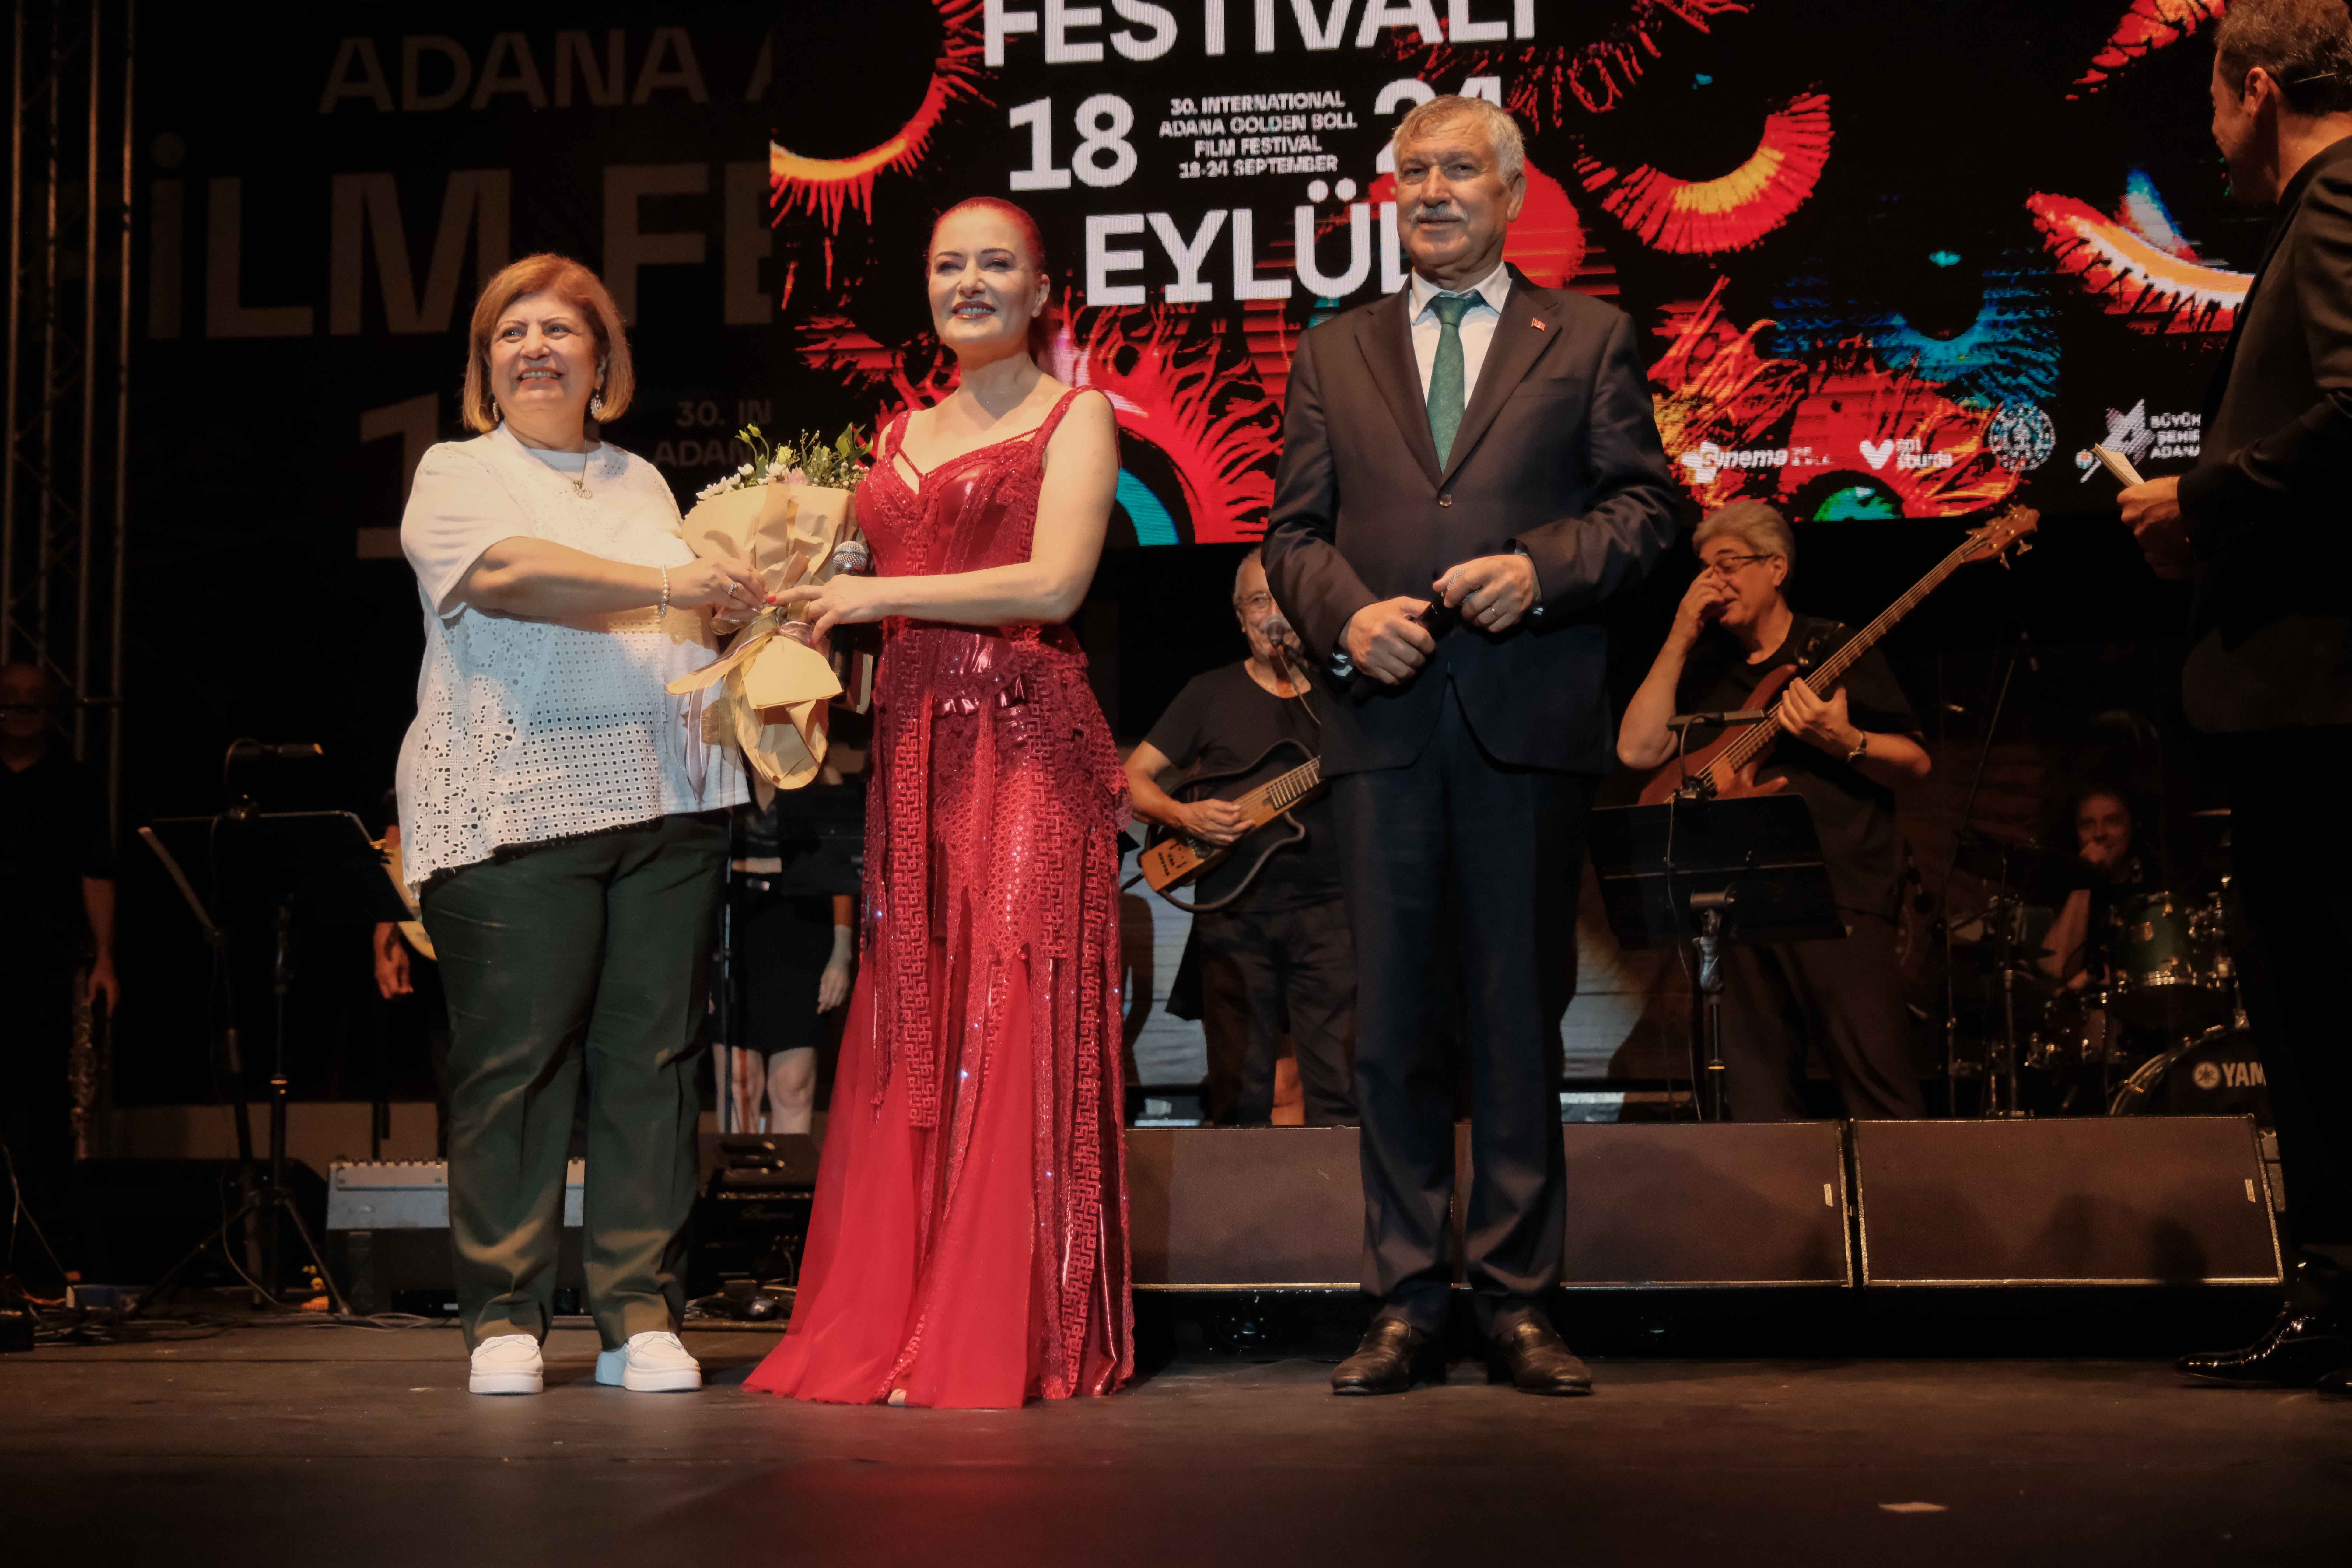 Uluslararası Adana Altın Koza Film Festivali’nde emek ödülleri verildi